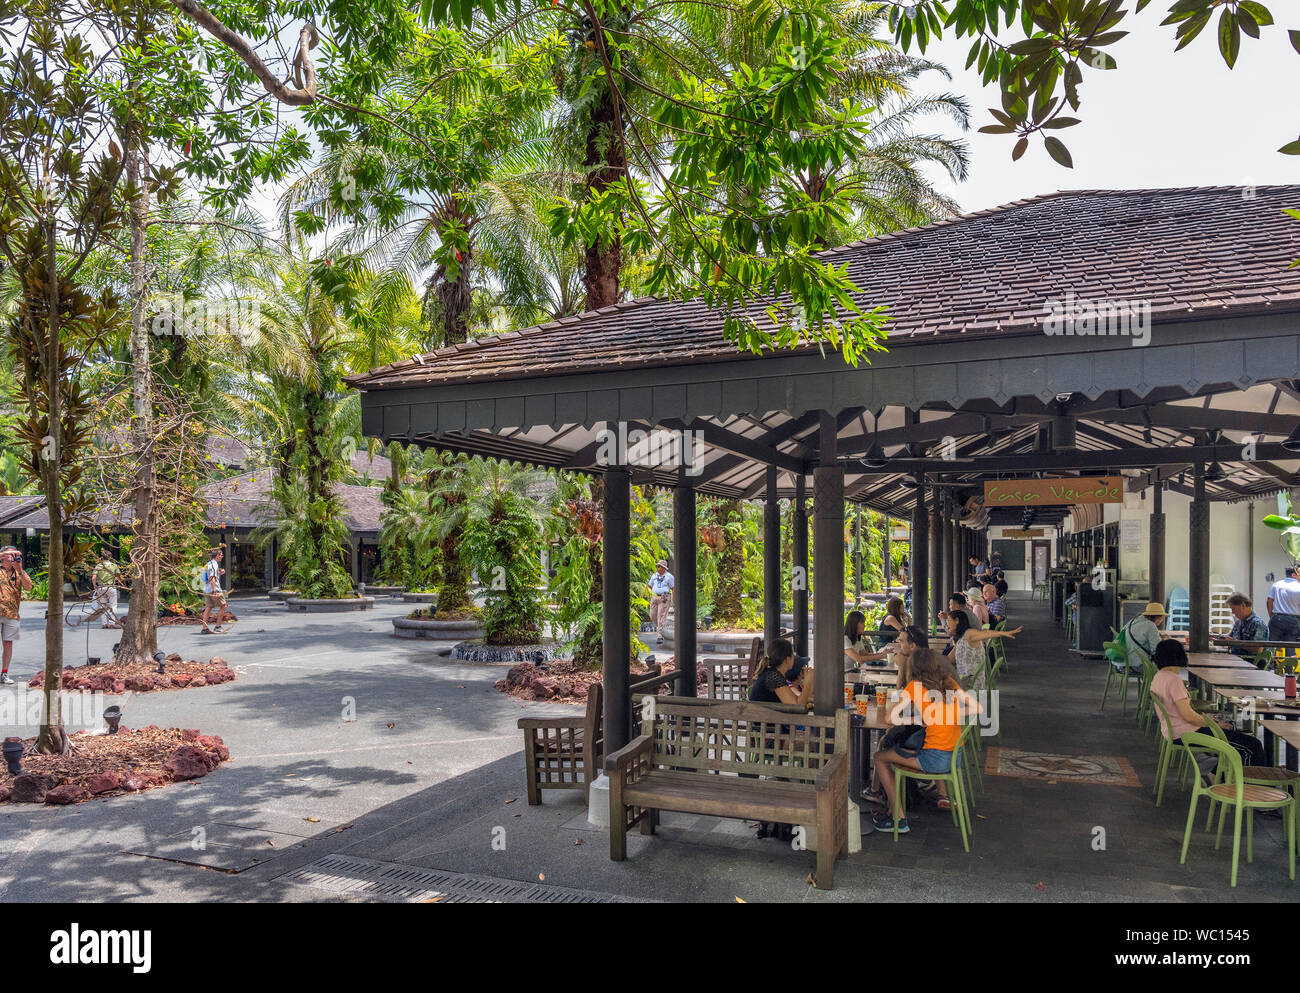 Cafe at the Singapore Botanic Gardens, Singapore Stock Photo